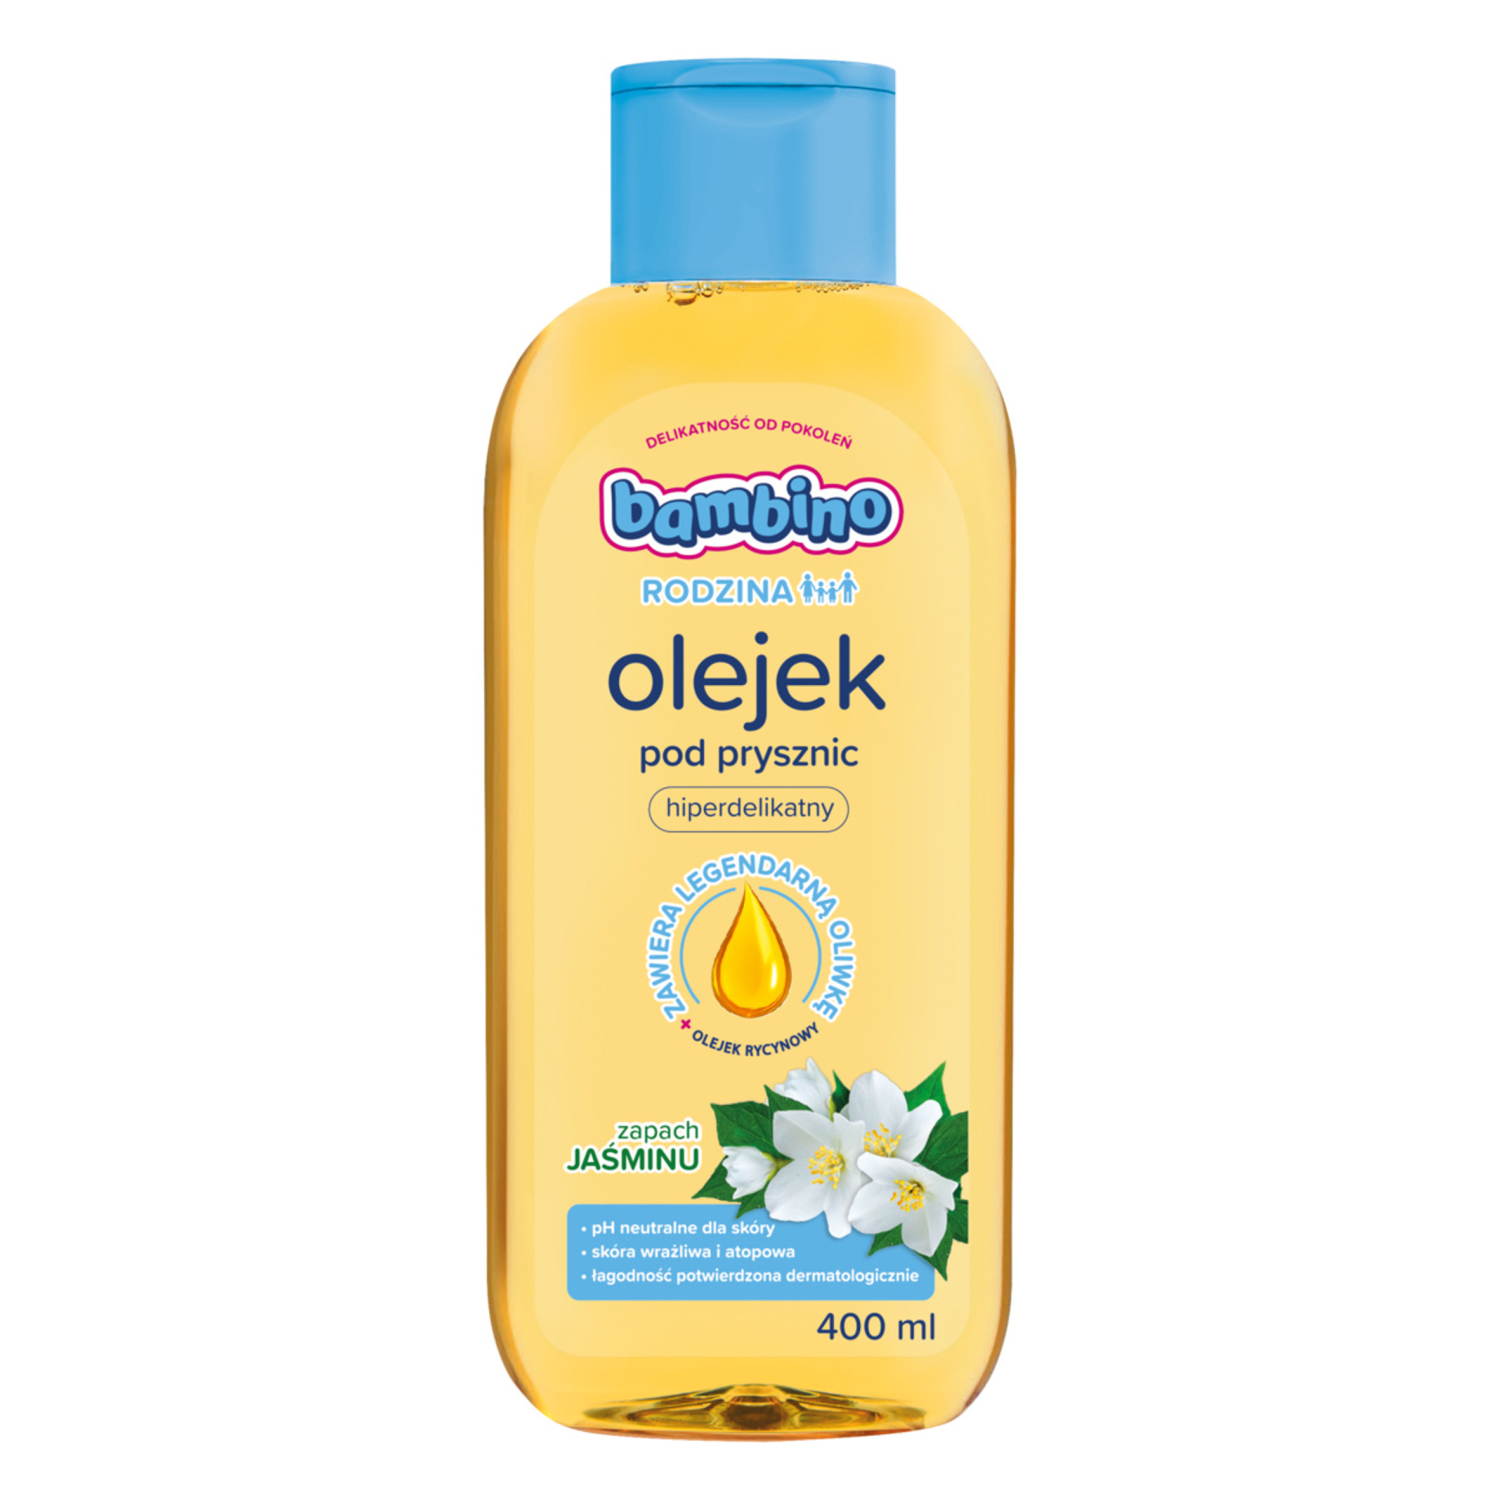 Bambino Rodzina olejek pod prysznic o zapachu jaśminu, 400 ml | hebe.pl